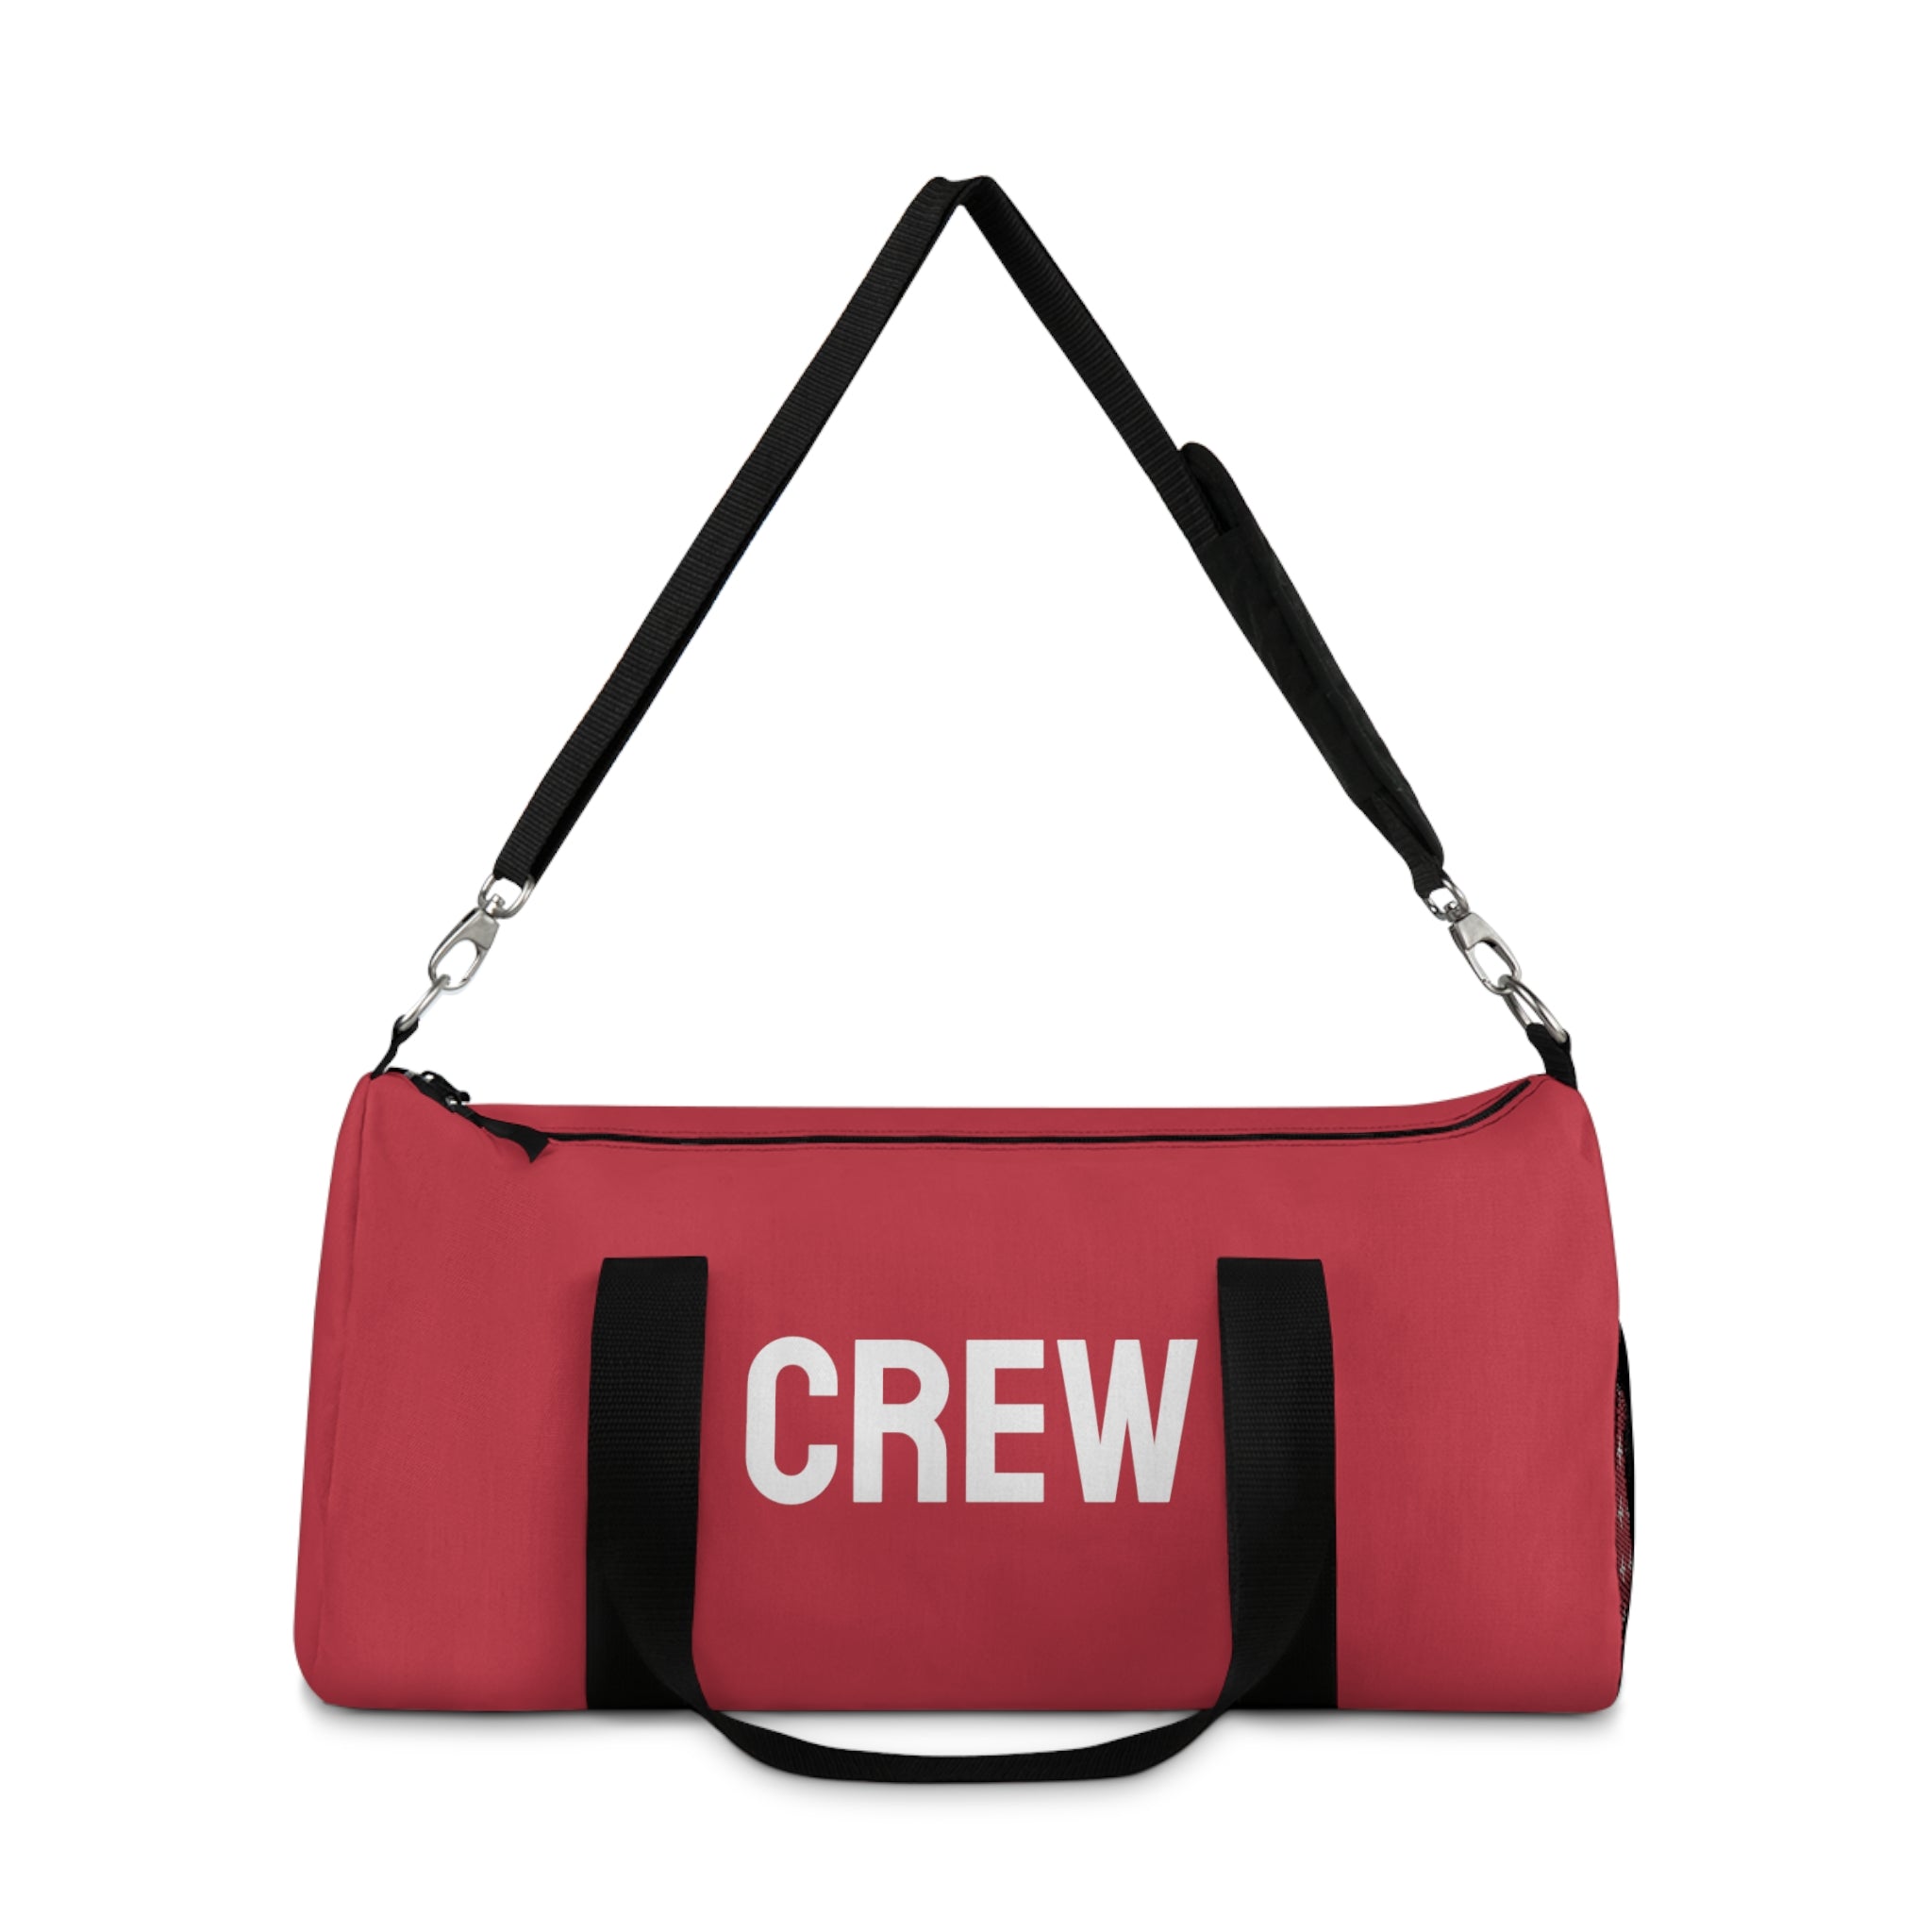 Crew Duffle Bag (Red)